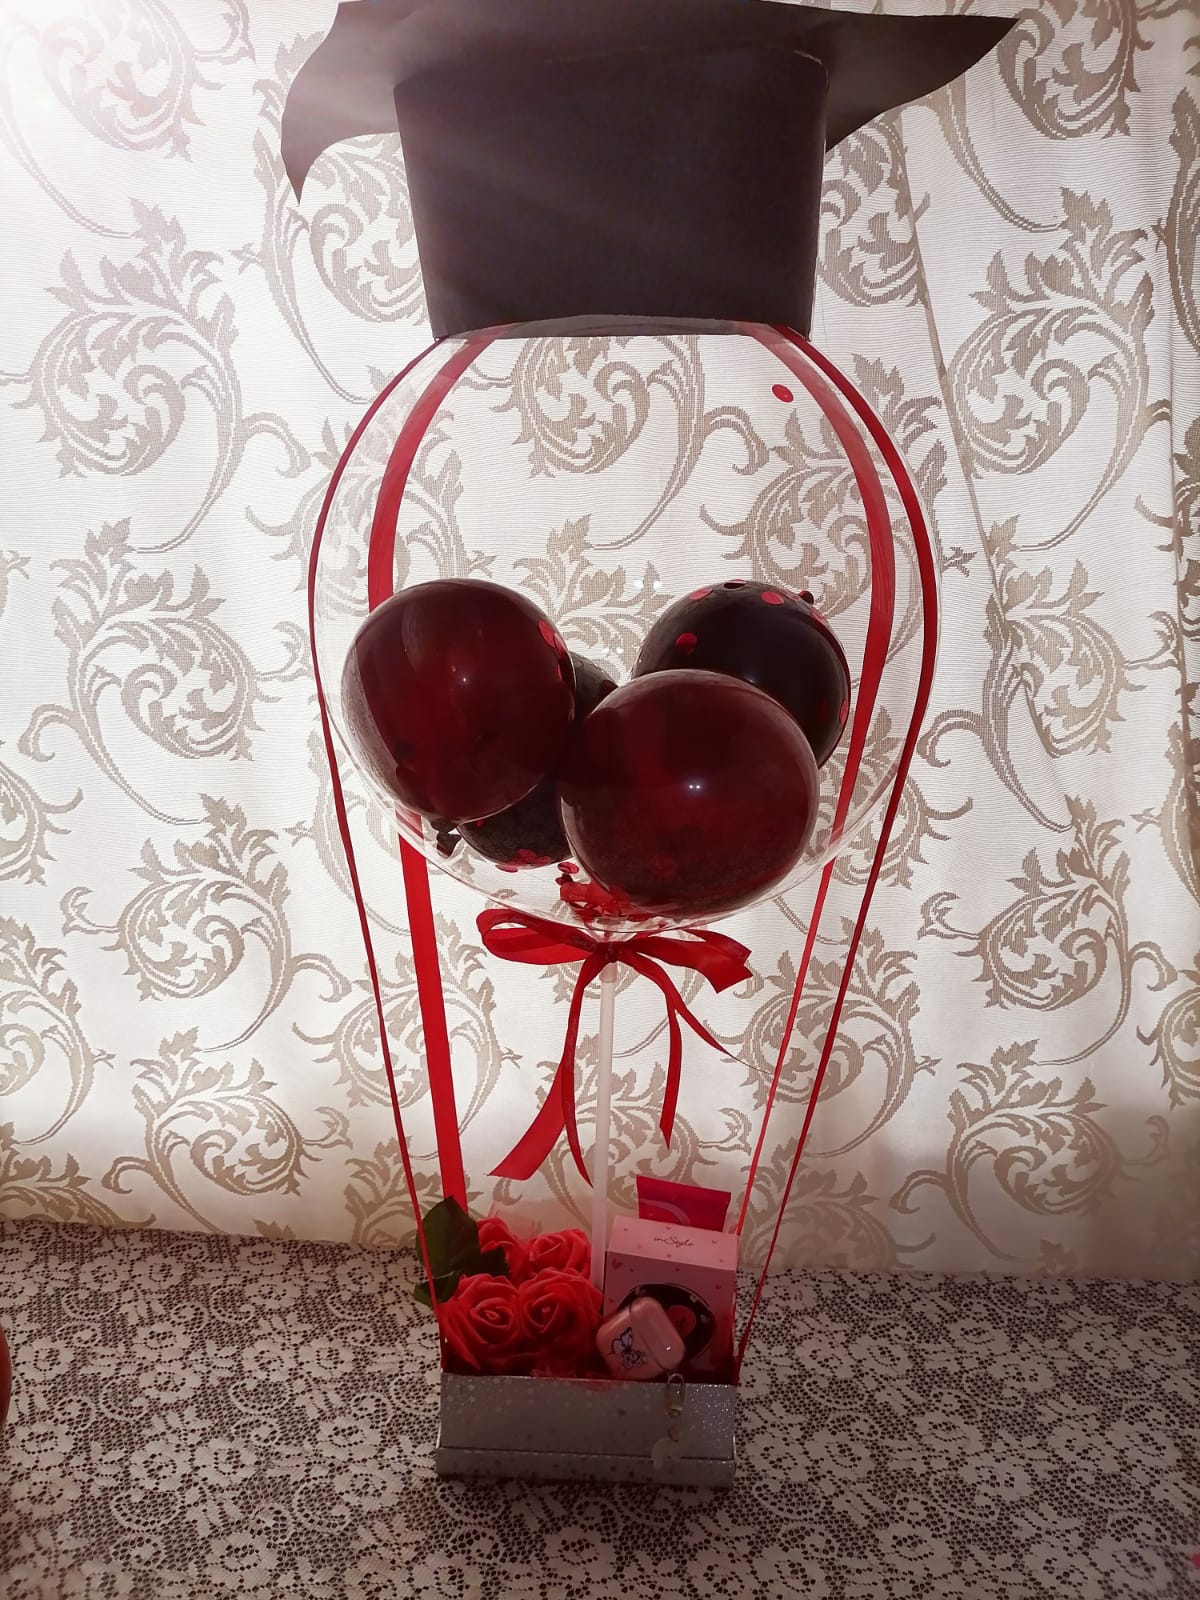 balloon arrangement